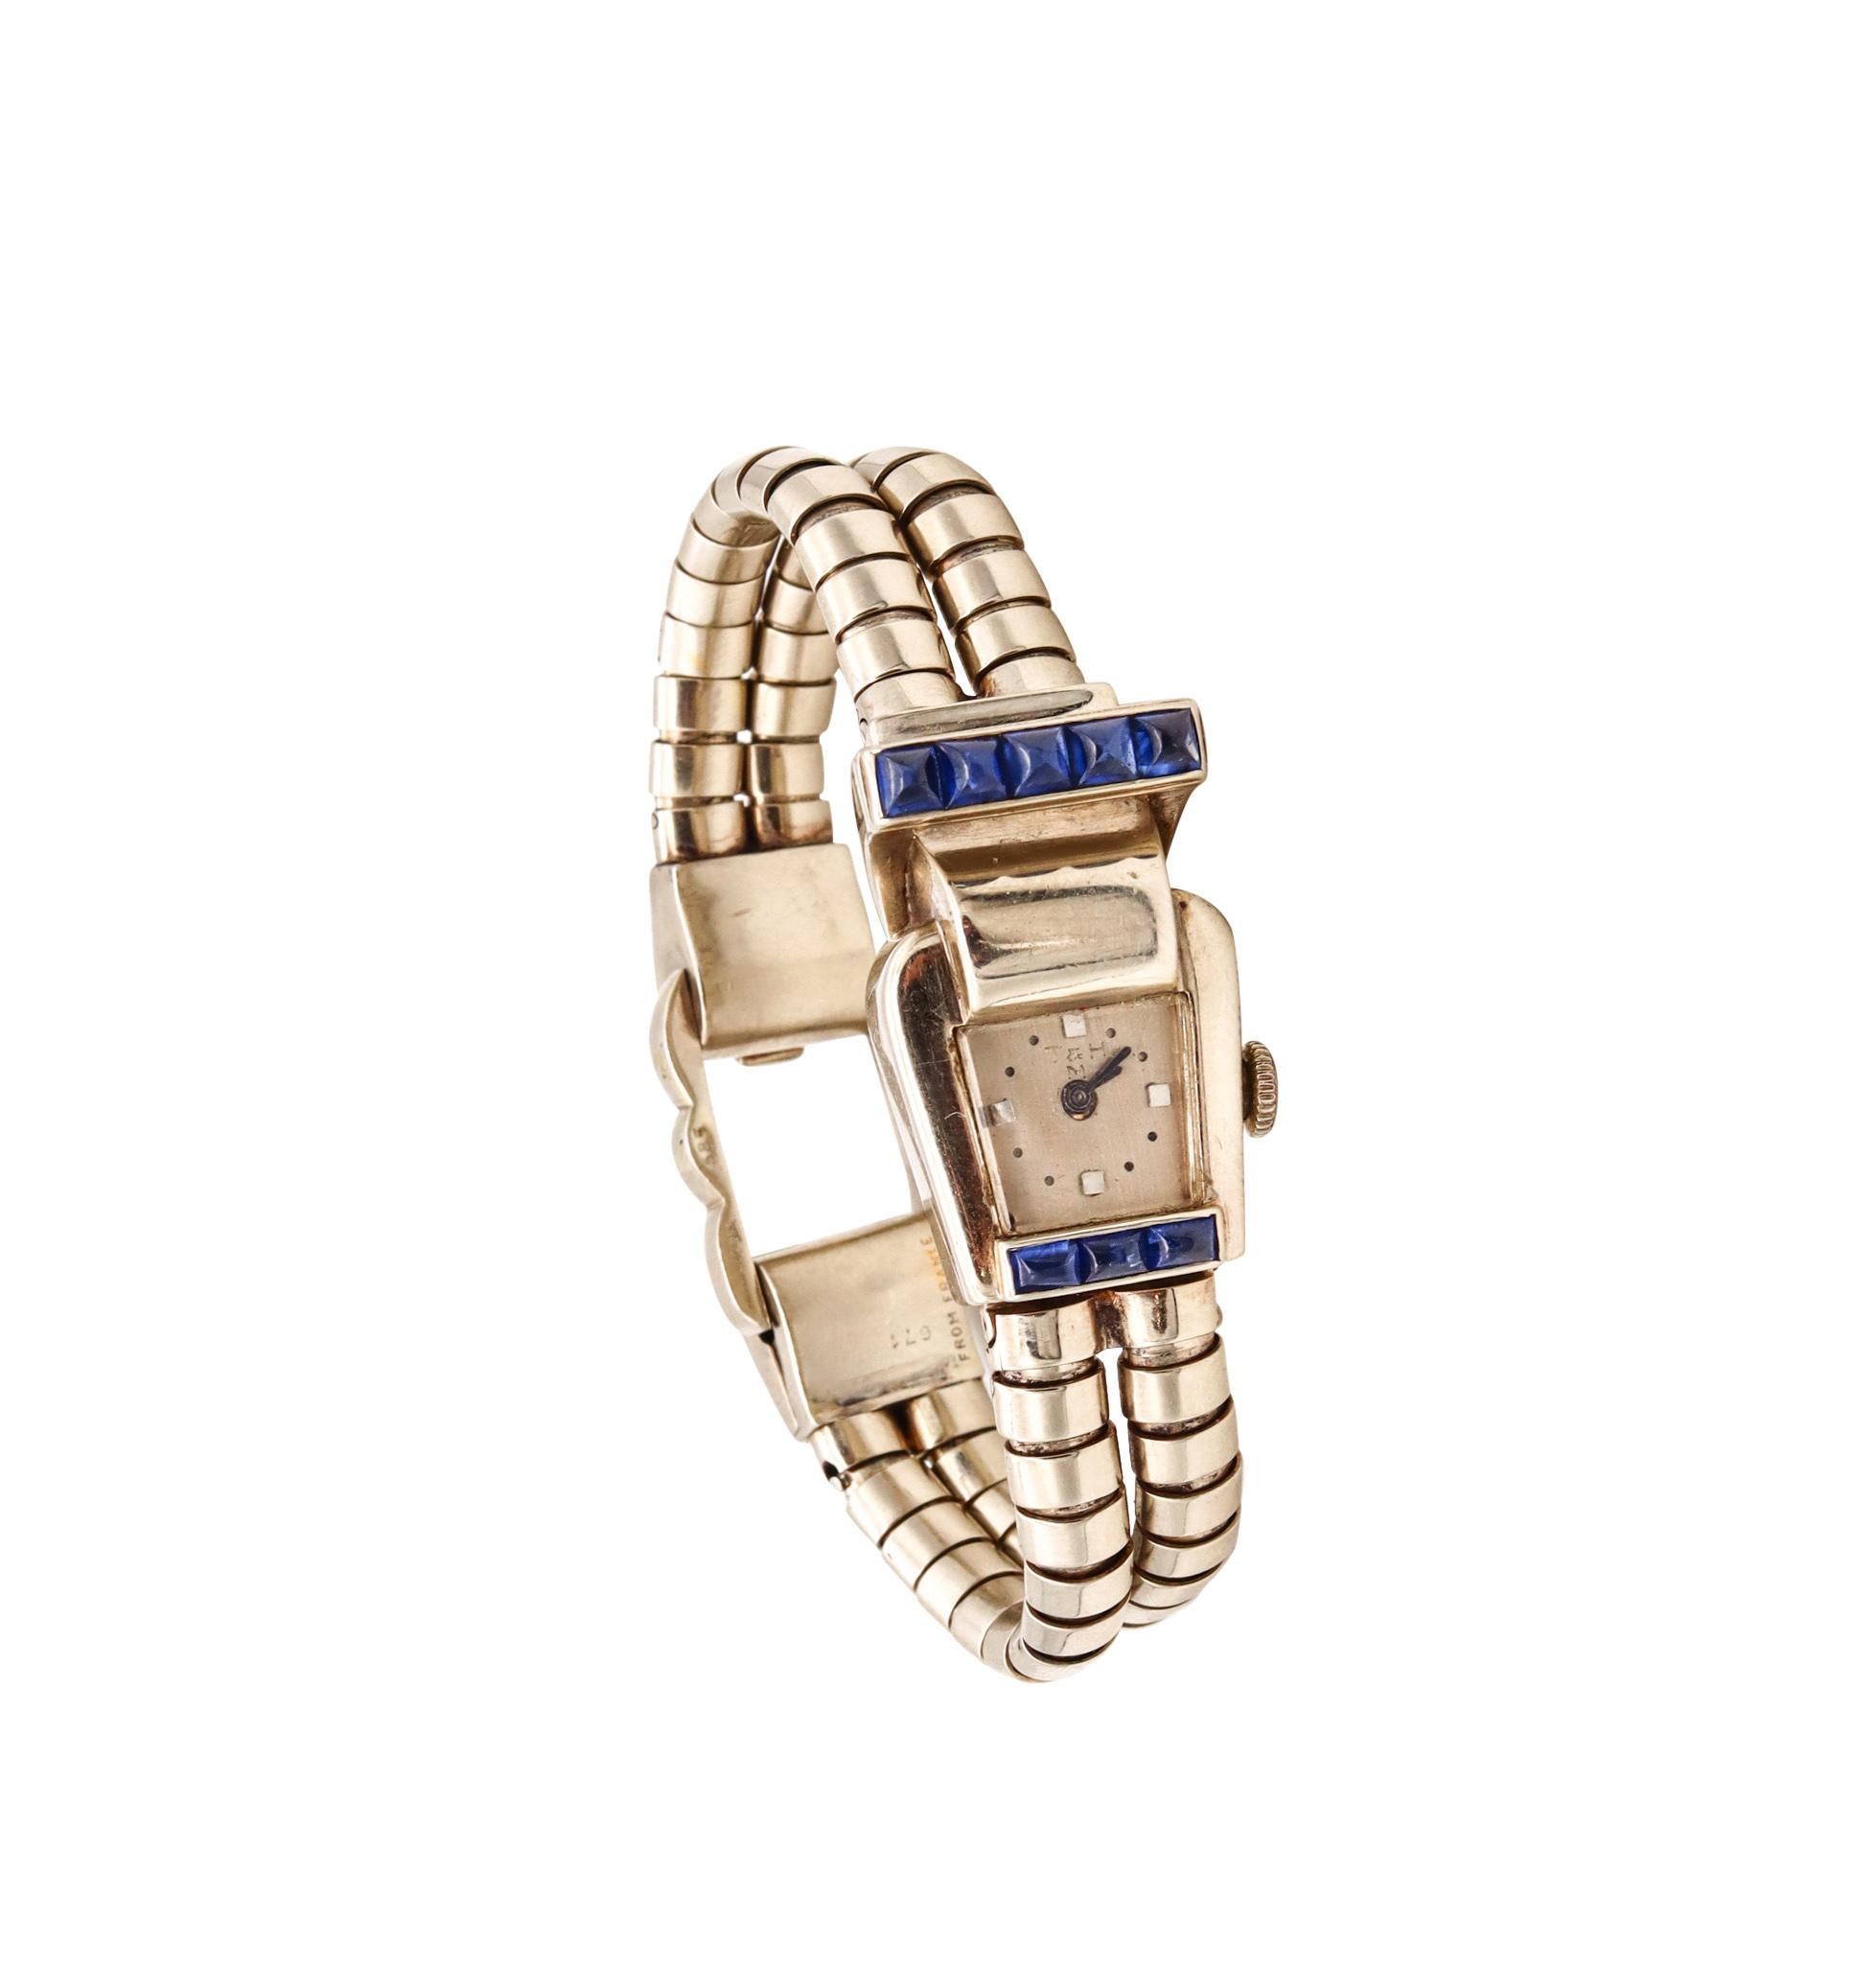 Une montre-bracelet ornée de bijoux, conçue par Trabert and Mauboussin.

Belle pièce géométrique créée à Paris, en France, par la maison Trabert and Mauboussin, dans les années 1950. Cette montre-bracelet rétro a été soigneusement réalisée en or